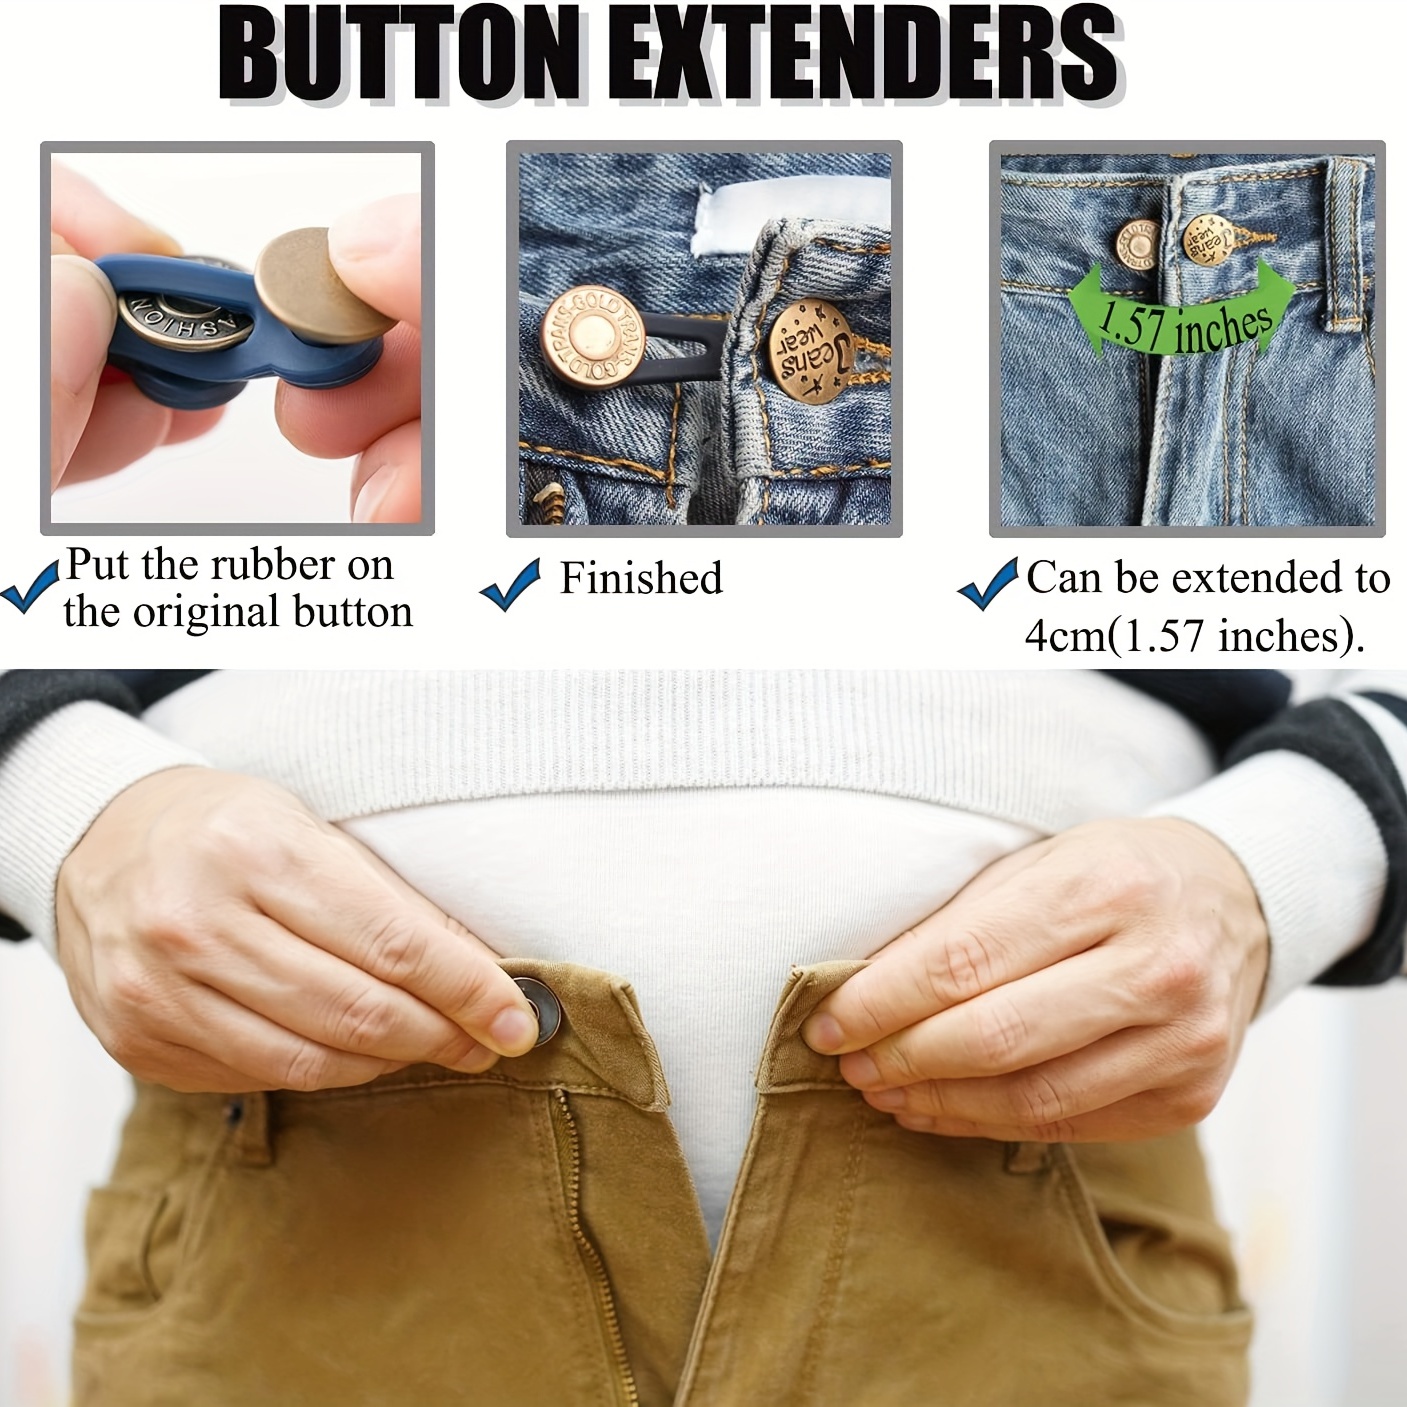 4pcs Button Extender for Pants, Pants Extender for Maternity,Buttons Extender Waistband Extenders Jean,Waist Extenders,Pants Button Extender (Elastic)